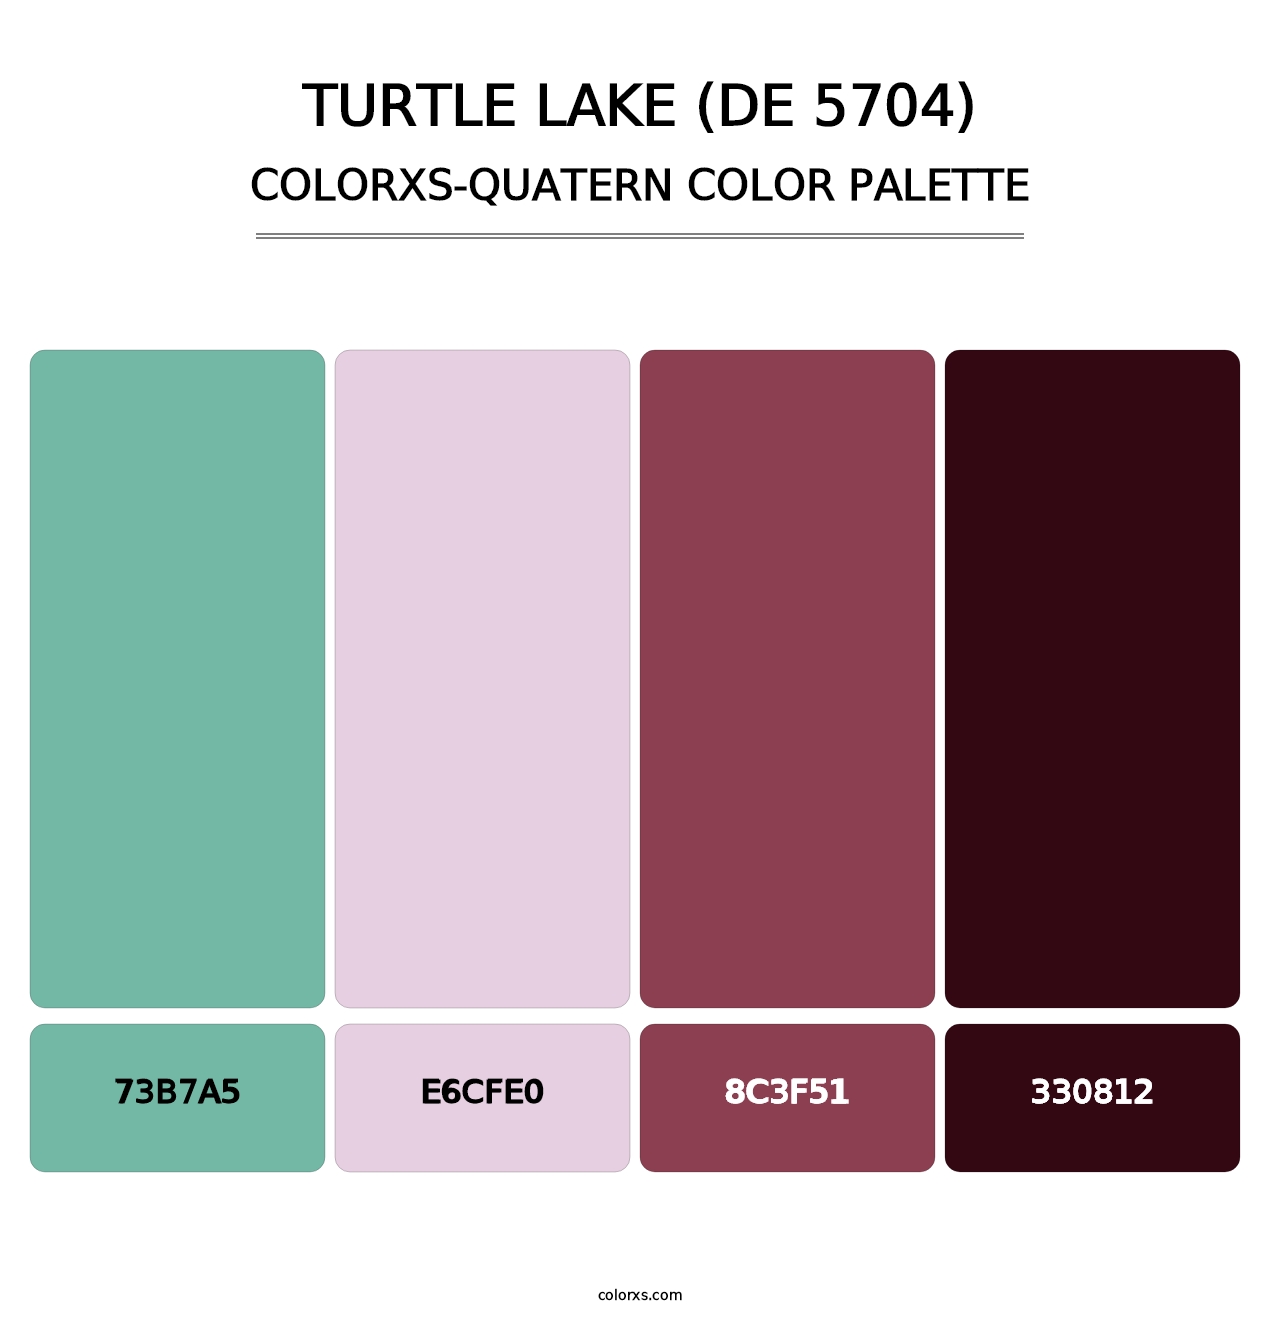 Turtle Lake (DE 5704) - Colorxs Quatern Palette